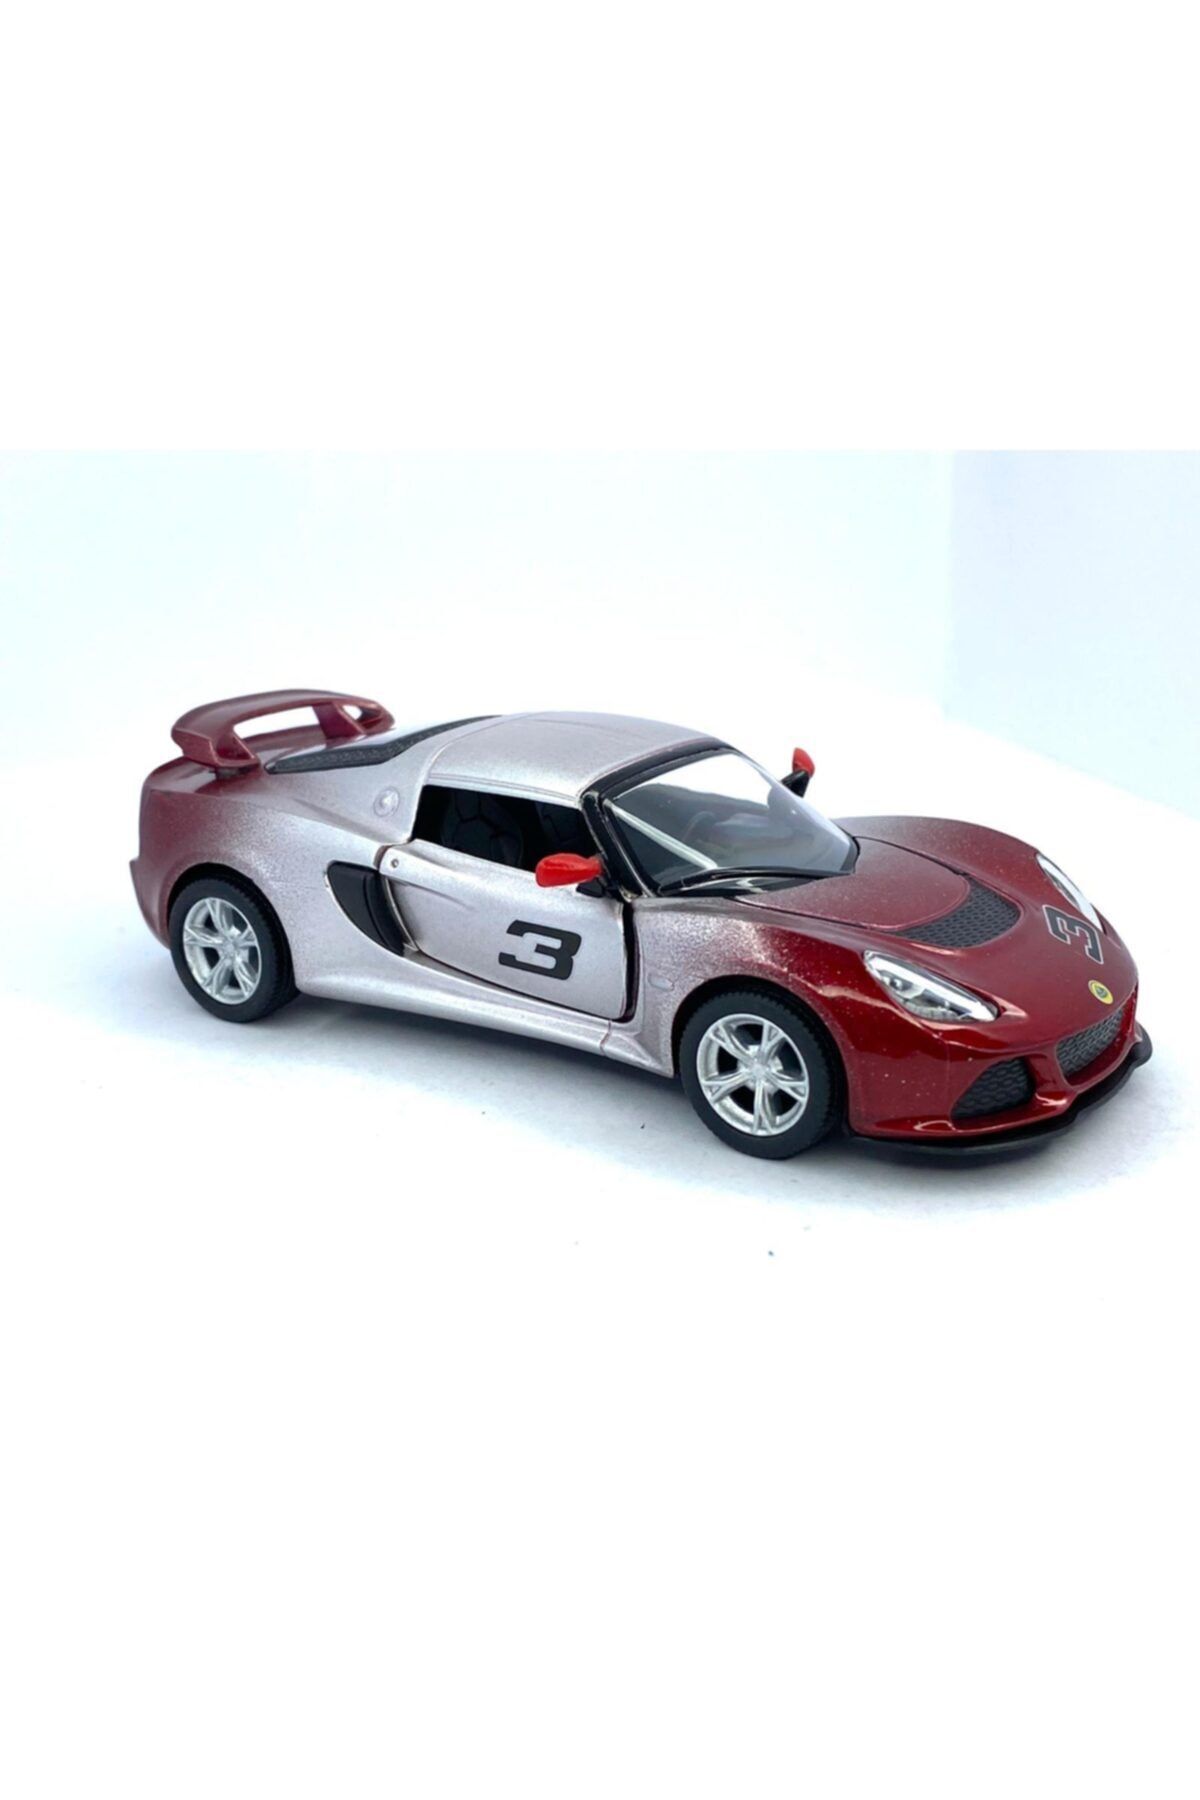 Kinsmart 2012 Lotus Exige S (çift Renkli ) - Çek Bırak 5inch. Lisanslı Model Araba, Oyuncak Araba 1:32